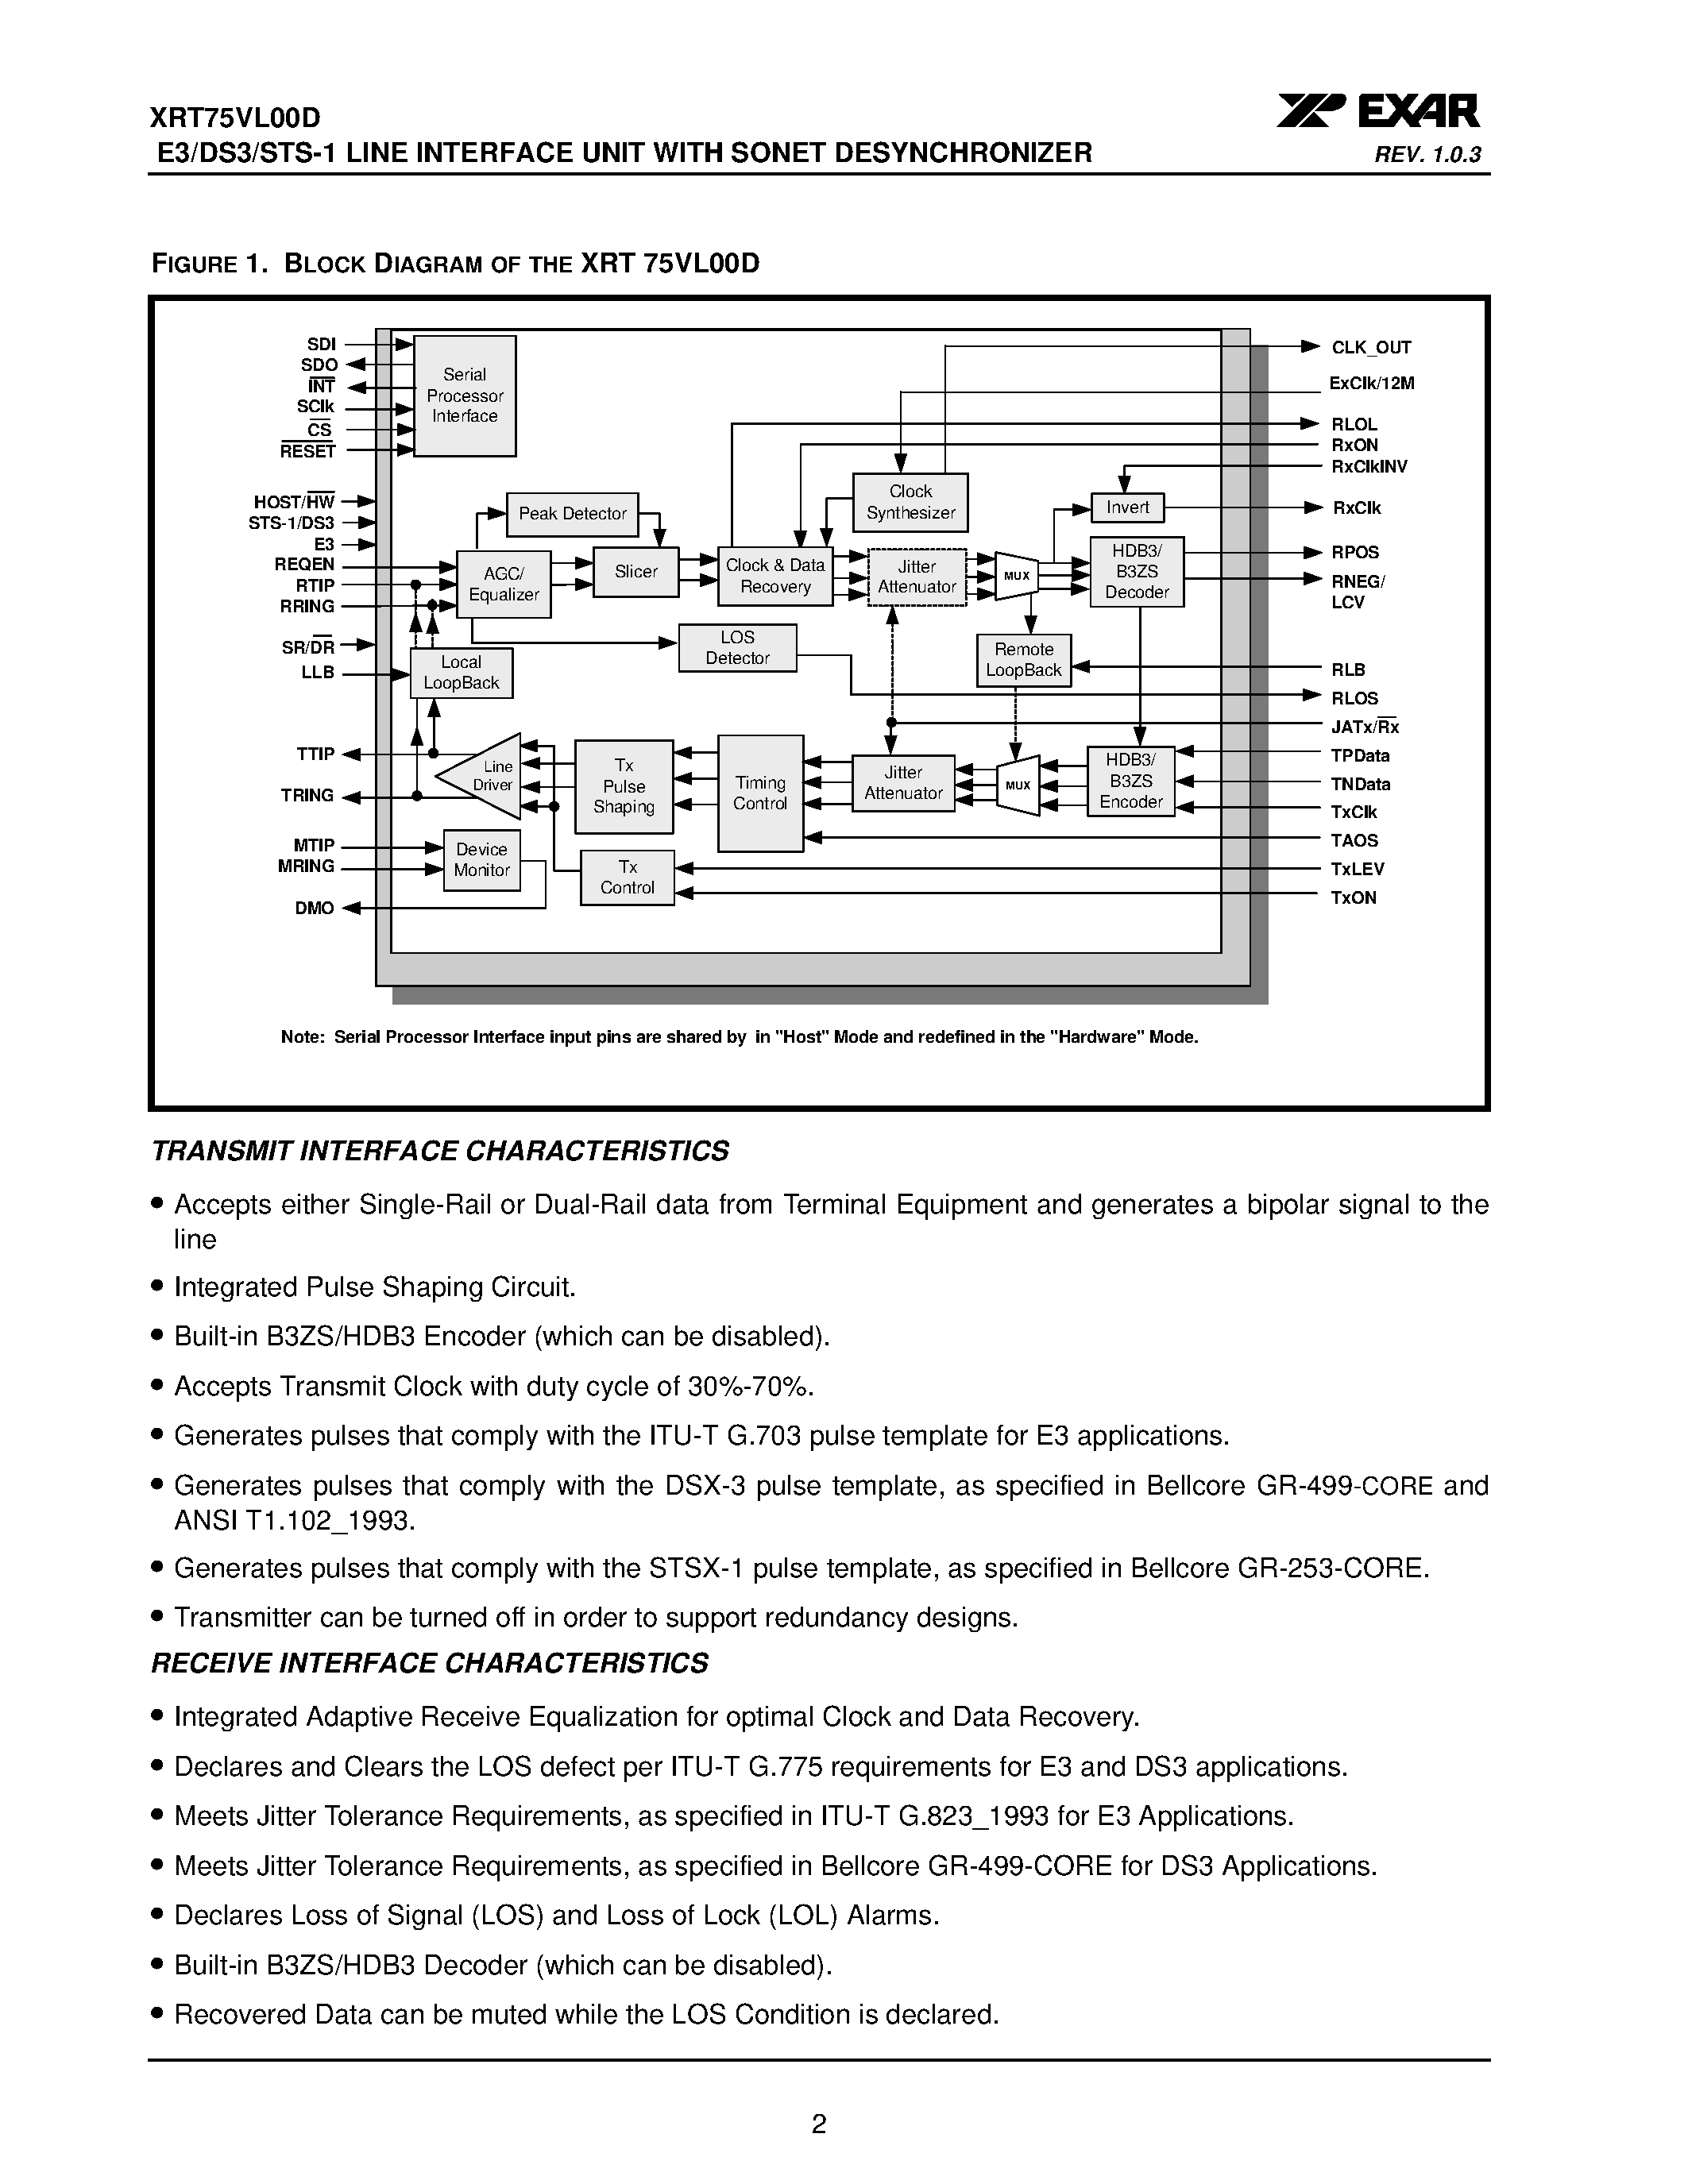 Даташит XRT75VL00D - E3/DS3/STS-1 LINE INTERFACE UNIT страница 2